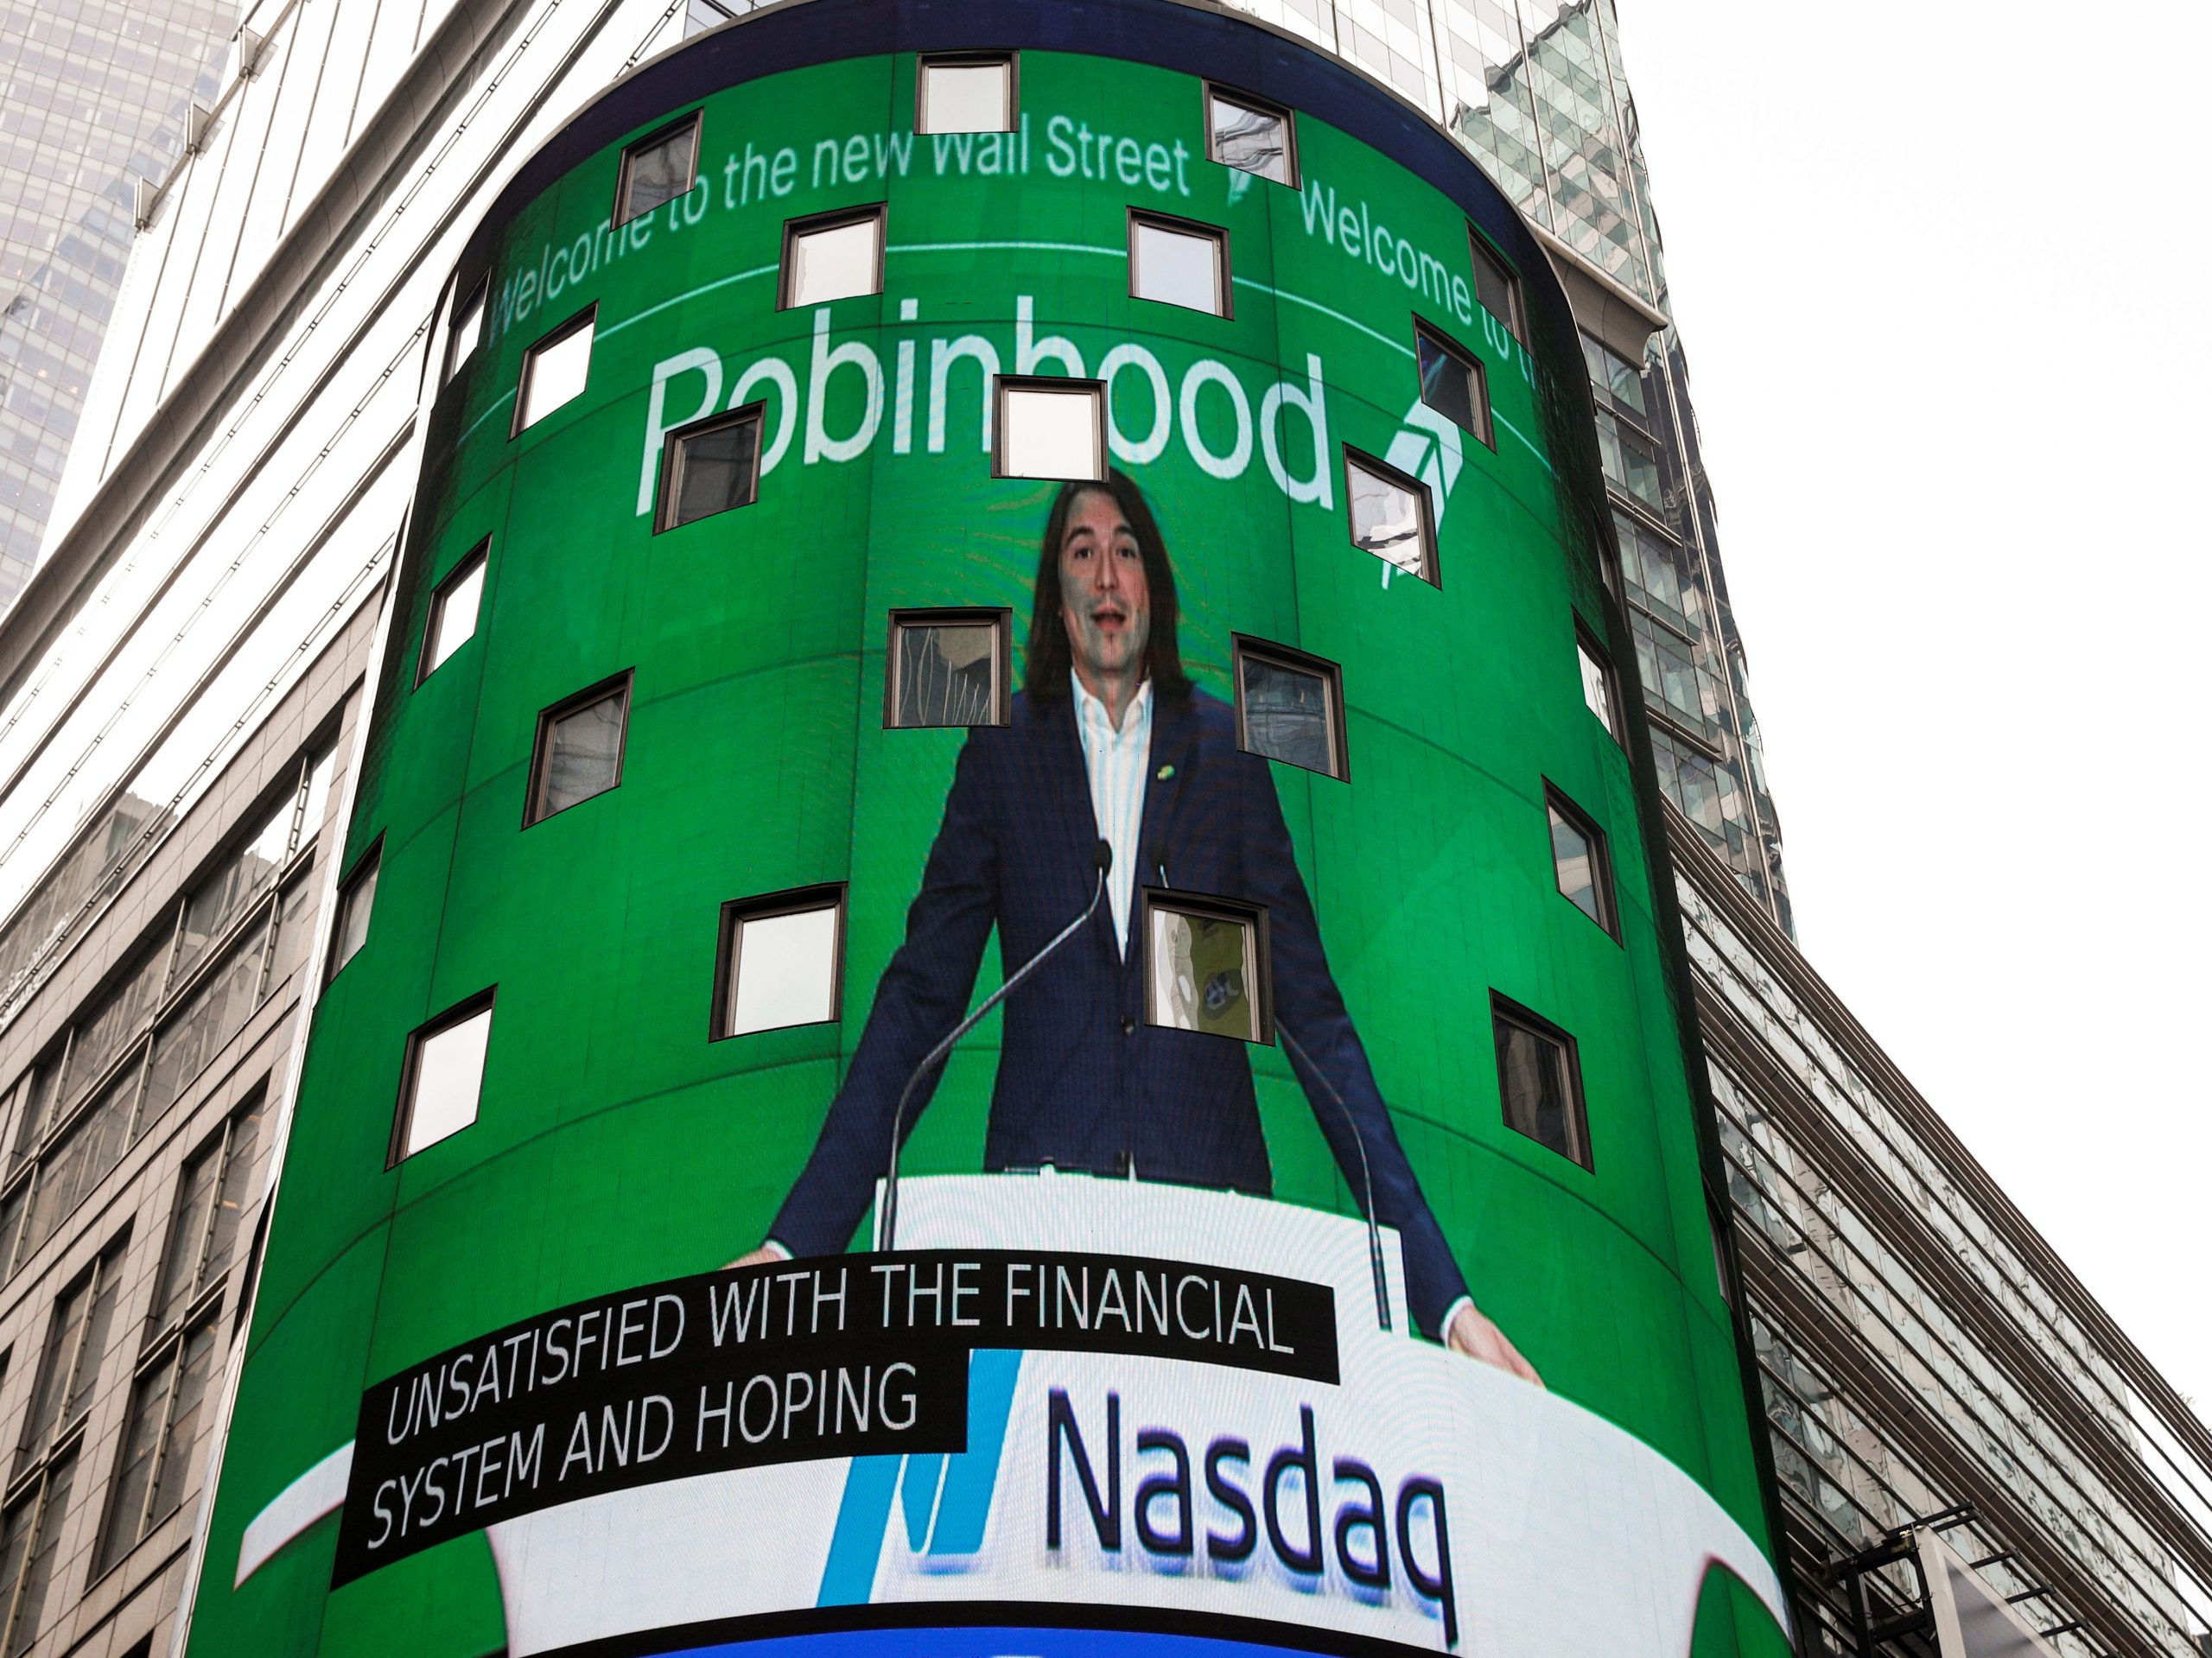 Robinhood Vlad standing at Nasdaq time square billboard